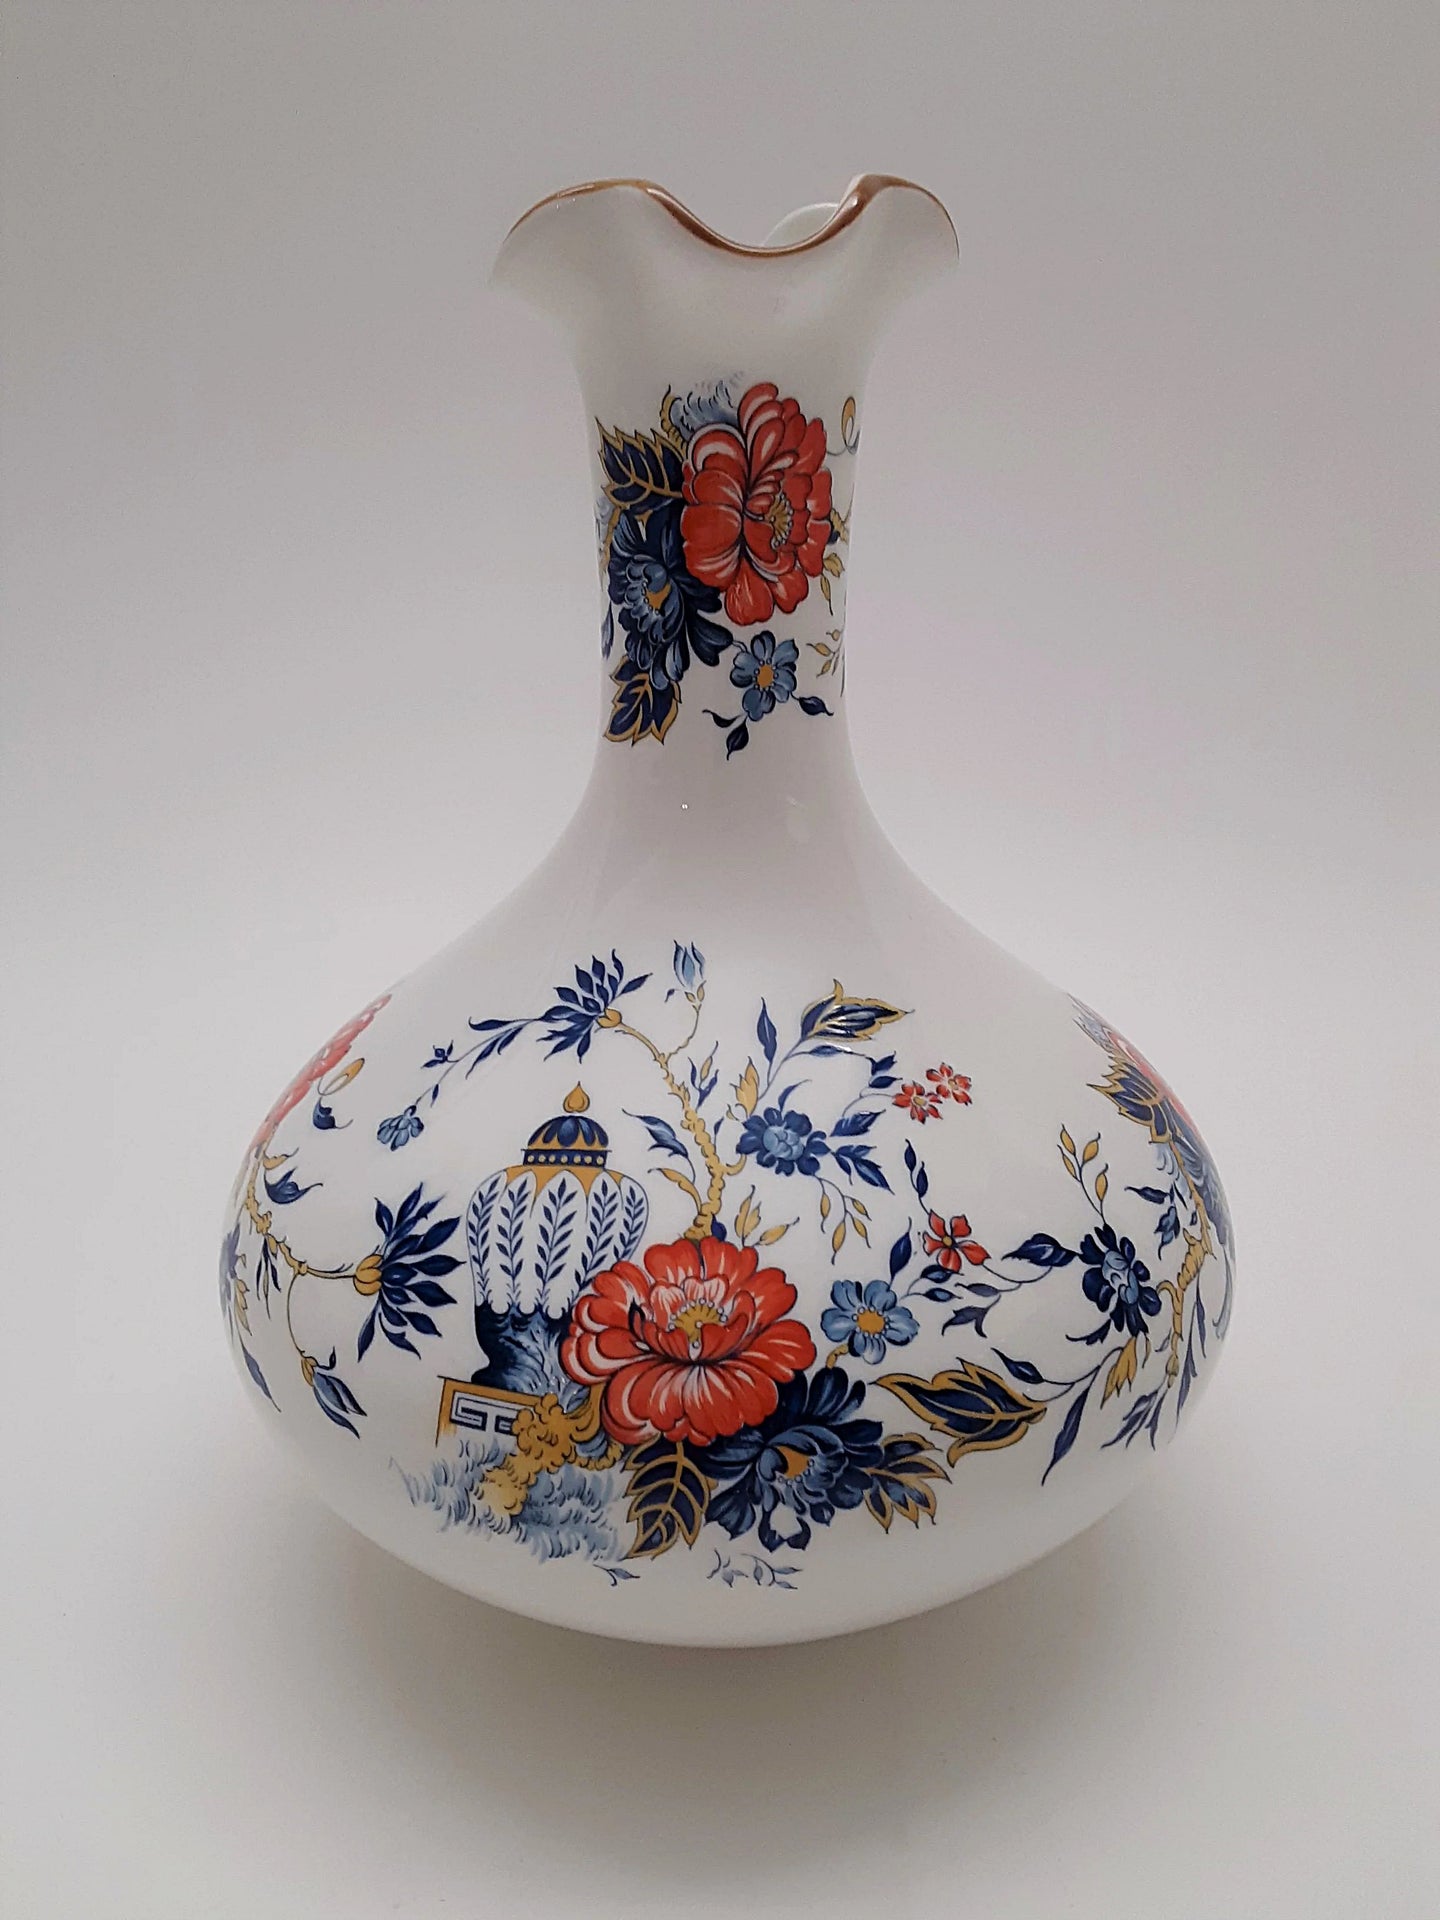 Crown Staffordshire Penang Orange and Blue Floral Vase. 1974-1979